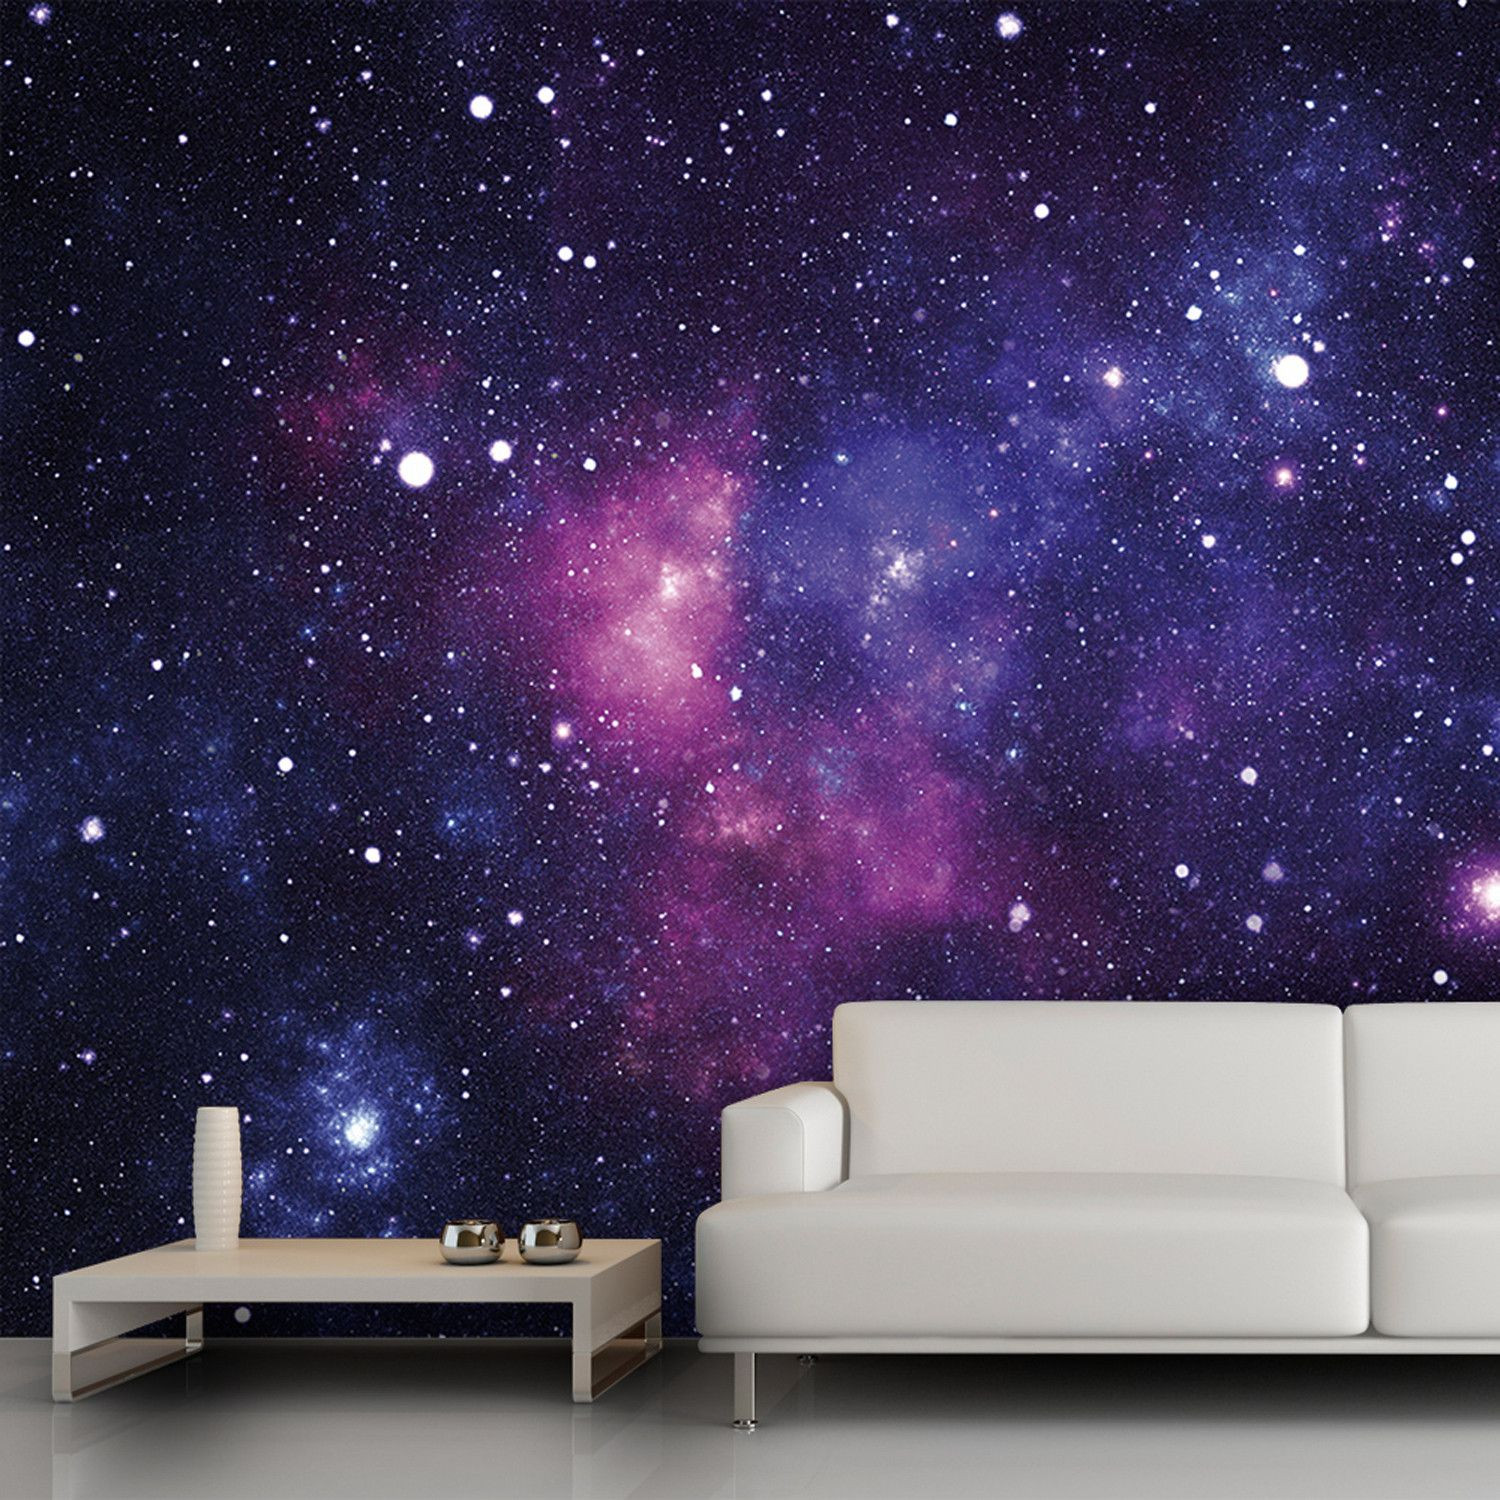 Galaxy Bedroom Wallpaper
 Galaxy Ideas for School of Rock